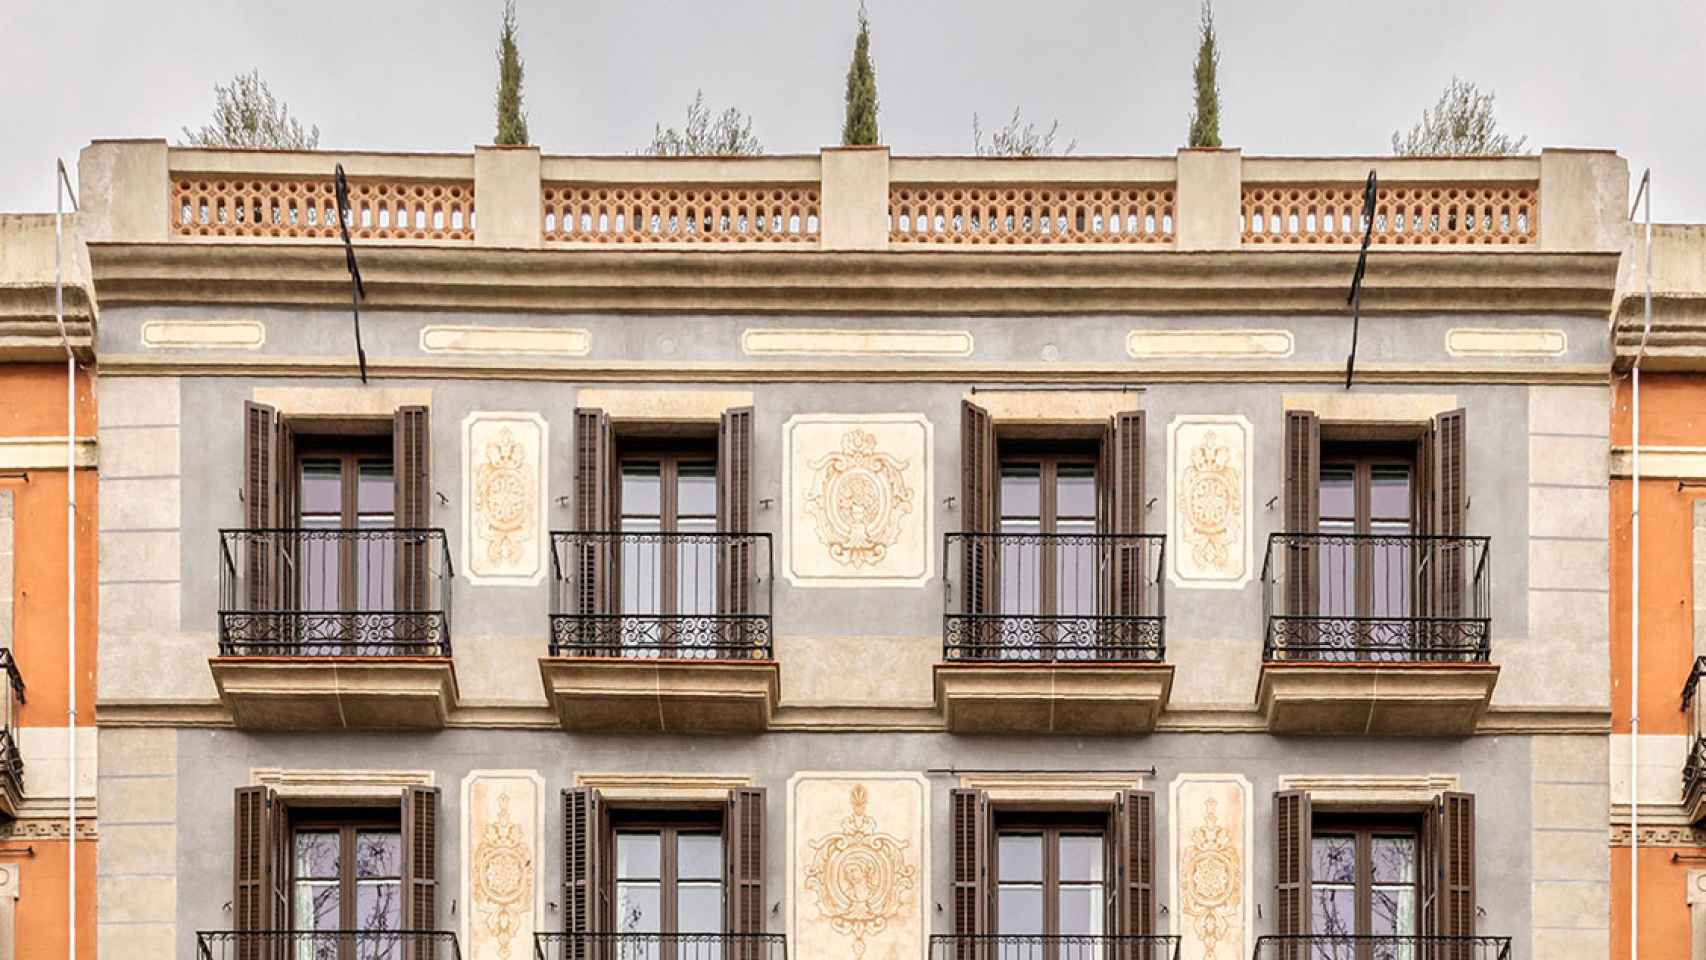 Fachada del hotel Antigua Casa Buenavista, situado en Ronda Sant Antoni y propiedad de la familia andorrana Monlleví / Cedida